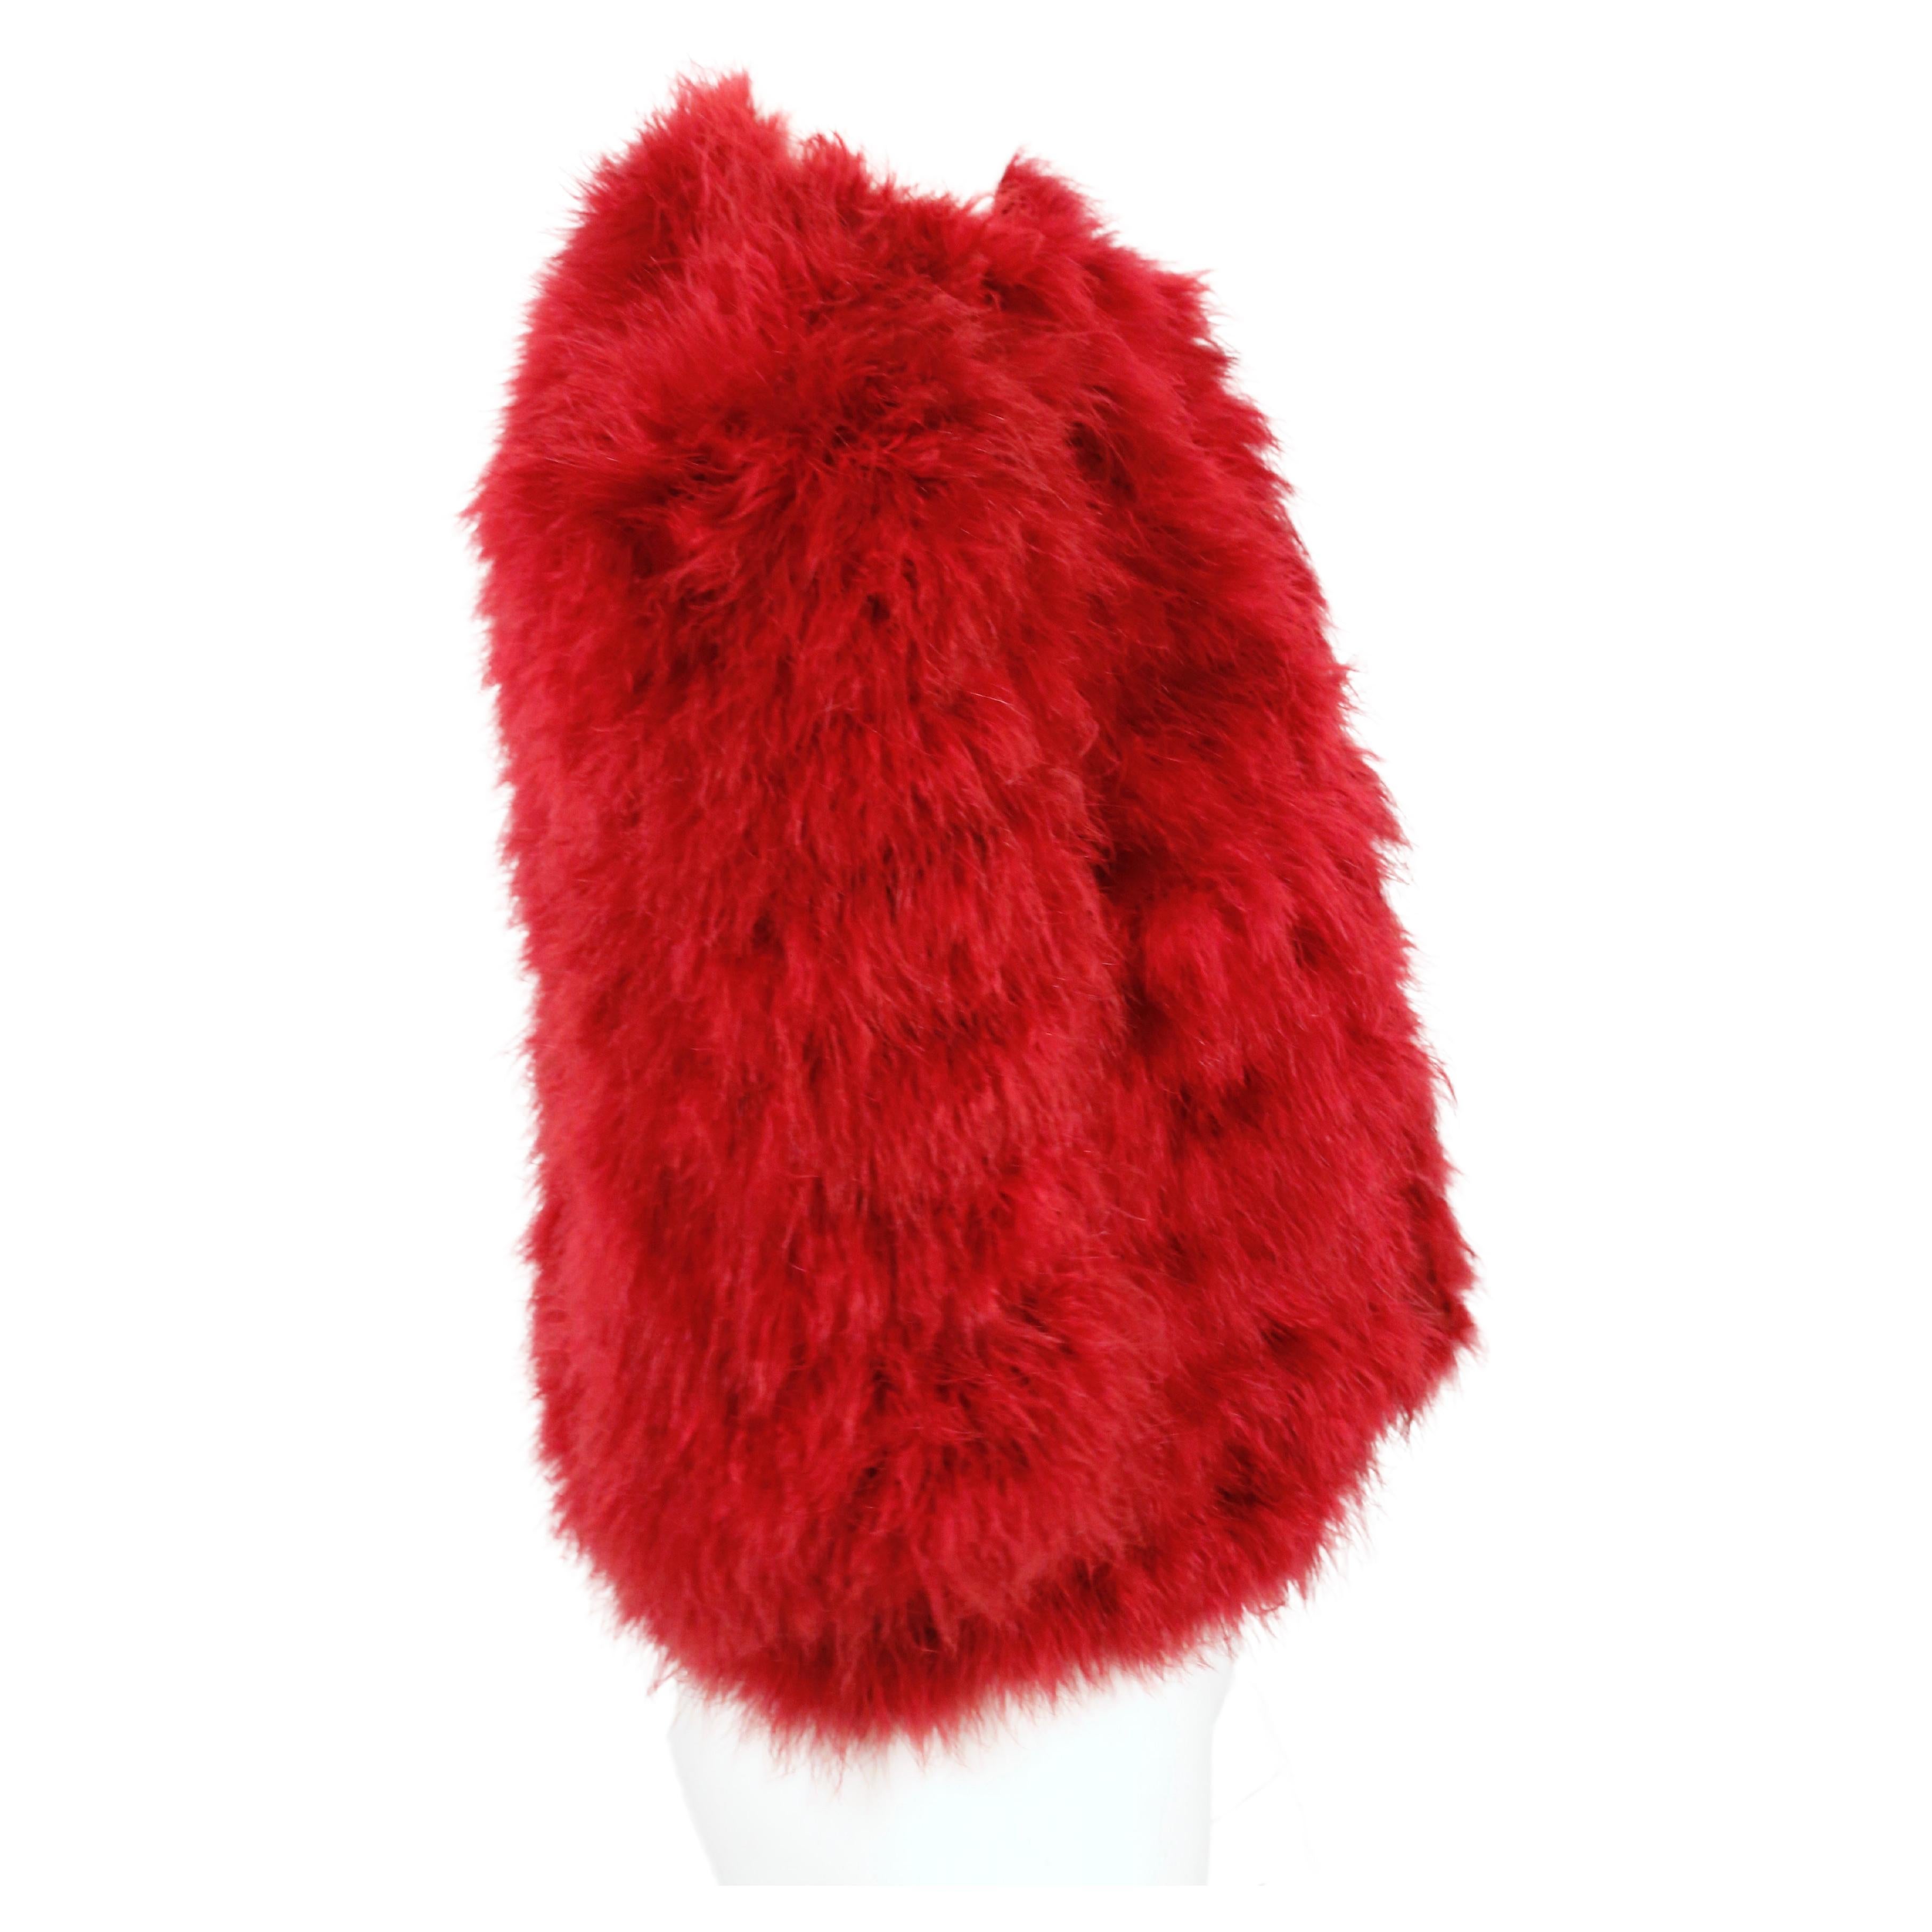 Fuchsiafarbene, mollige Jacke mit 3/4-Ärmeln aus Marabu-Federn, entworfen von Yves Saint Laurent im Herbst 1981, wie auf dem Laufsteg zu sehen. Dieses Stück ist auch Teil des Kostümarchivs des Met Museums und kann online eingesehen werden. Es ist